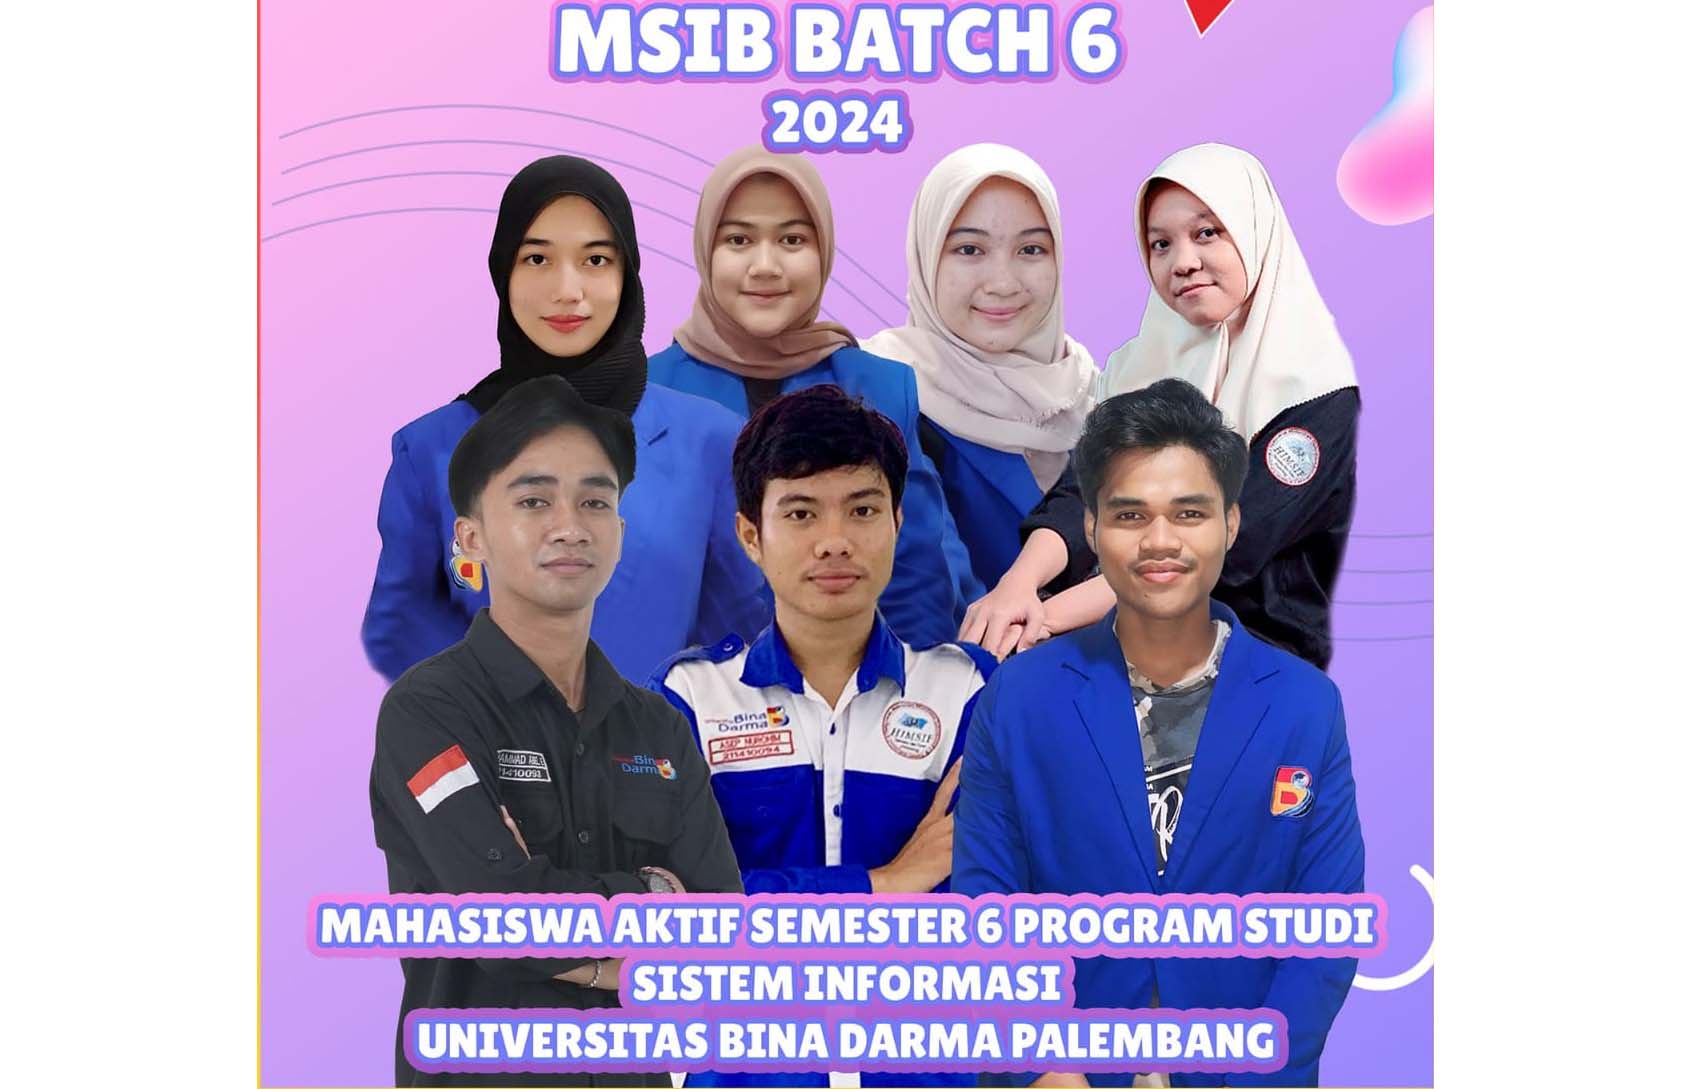 Mahasiswa Prodi Sistem Informasi UBD Palembang Berhasil Lolos Program MSIB Batch 6 Tahun 2024